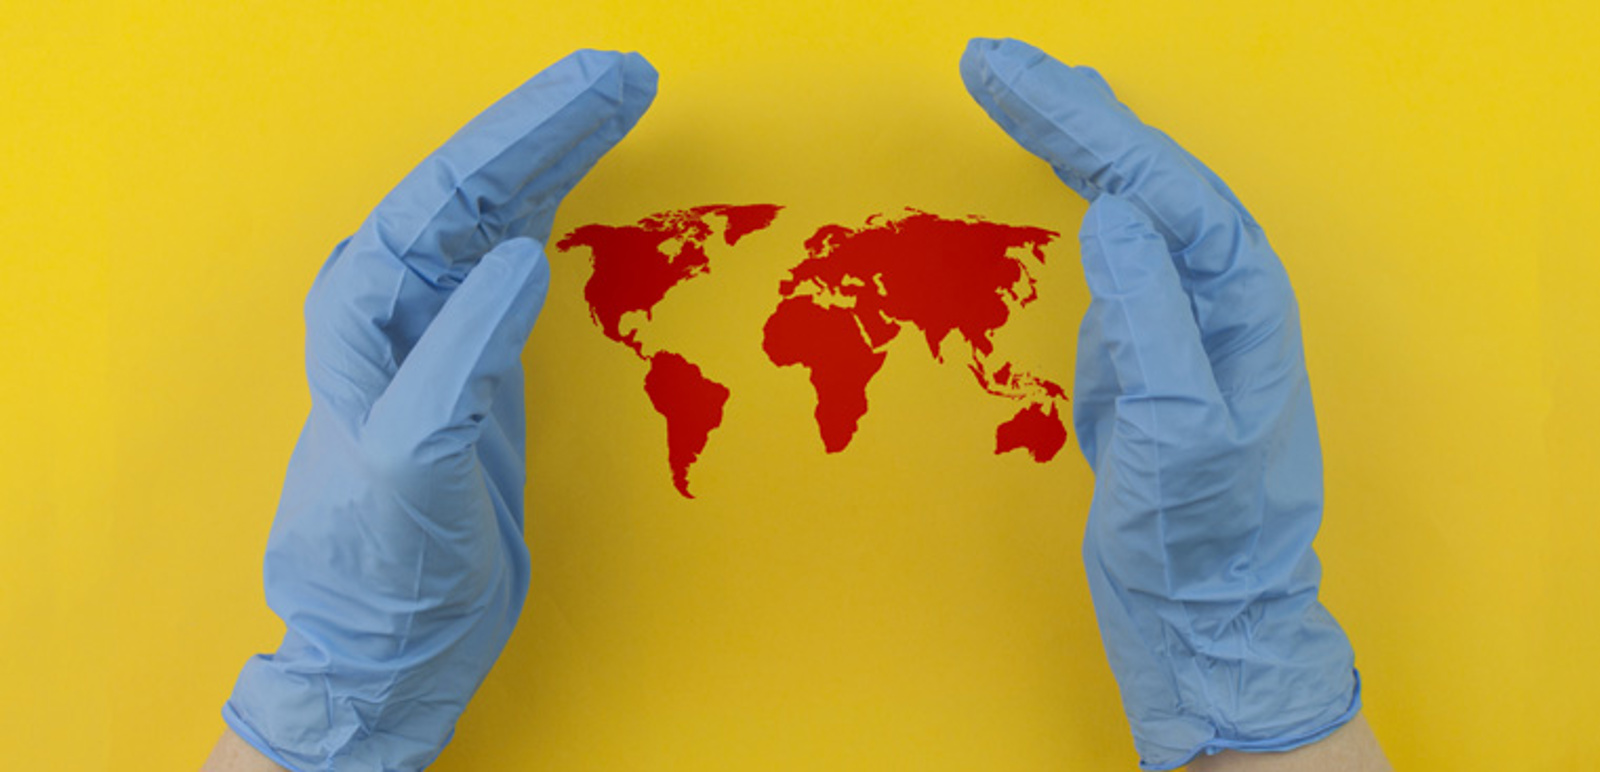 Händer klädda i sterila handskar som håller om en världskarta